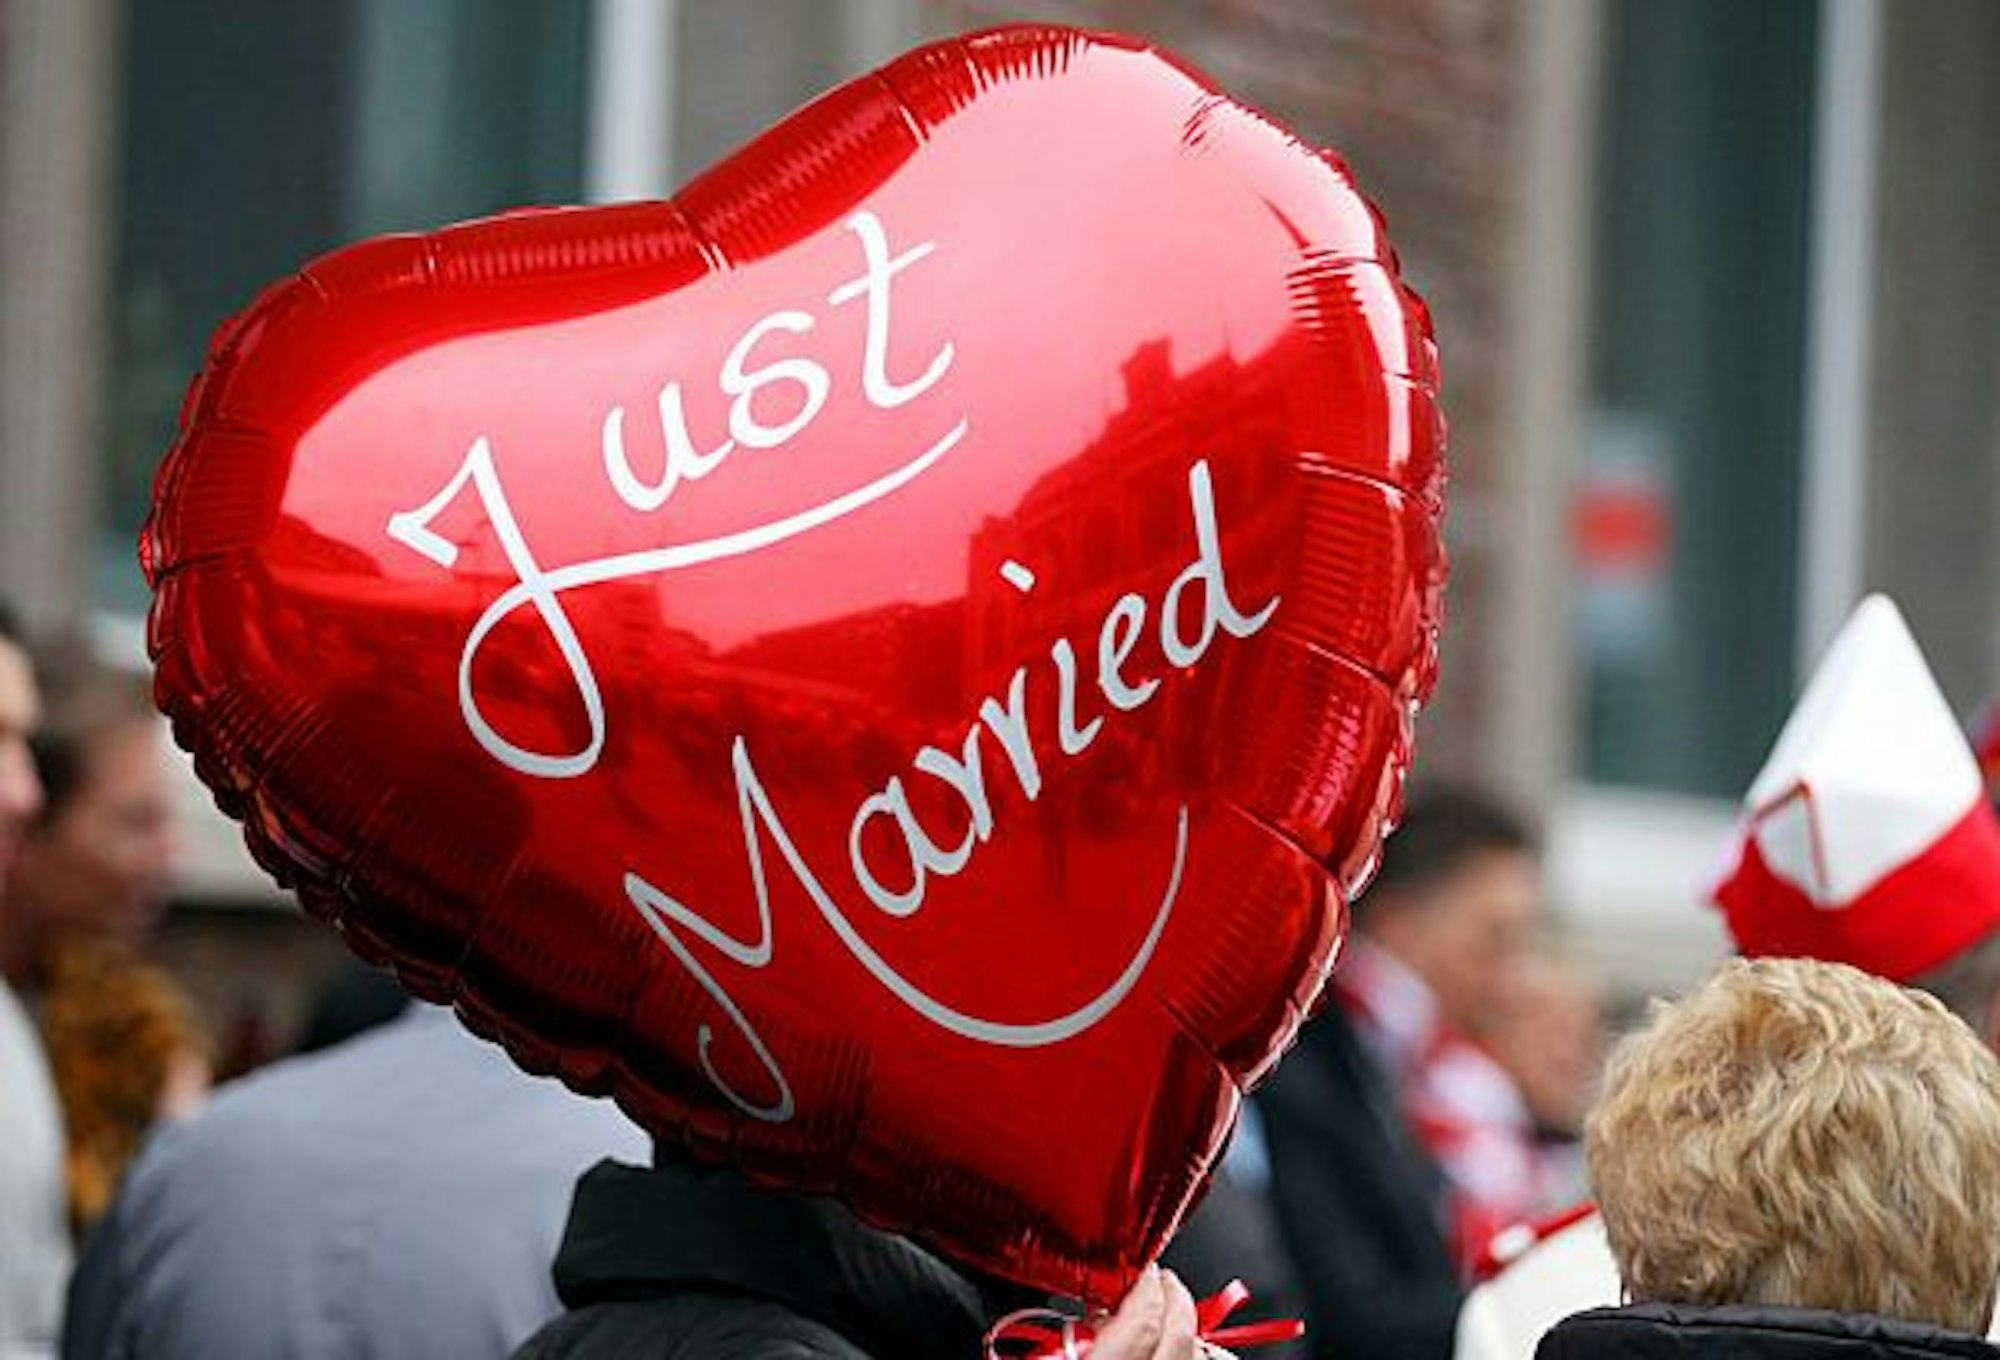 Eine Frau hält am 11.11.2011 in Köln vor dem Rathaus einen Ballon mit der Aufschrift "Just Married" in der Hand.